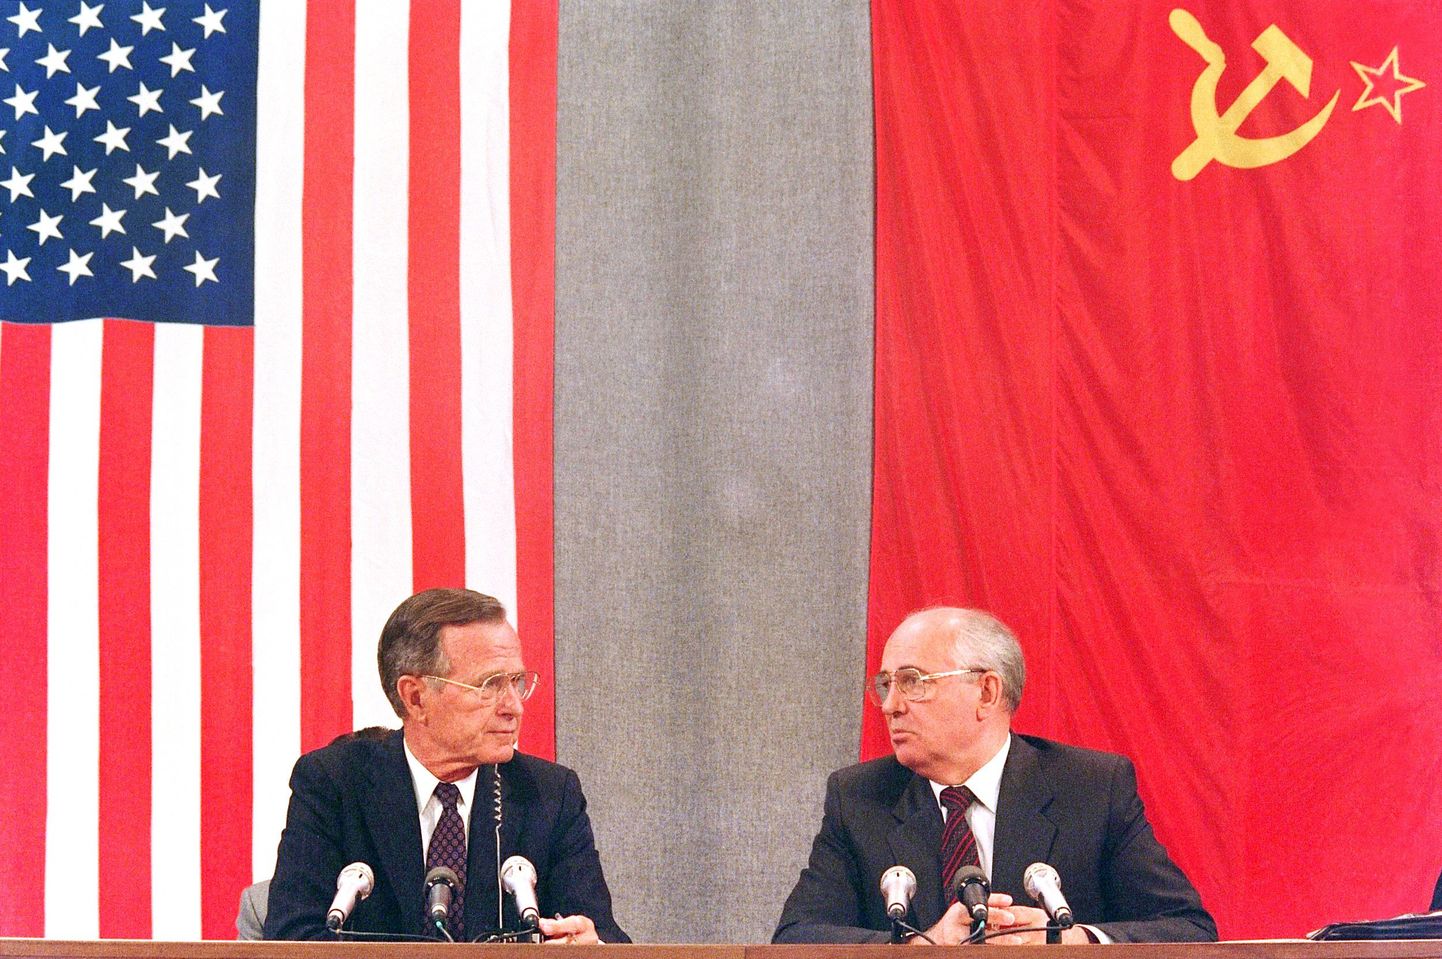 Arhiivifotol on George H.W. Bush ja Mihhail Gorbatšov 1991. juulis Moskvas.